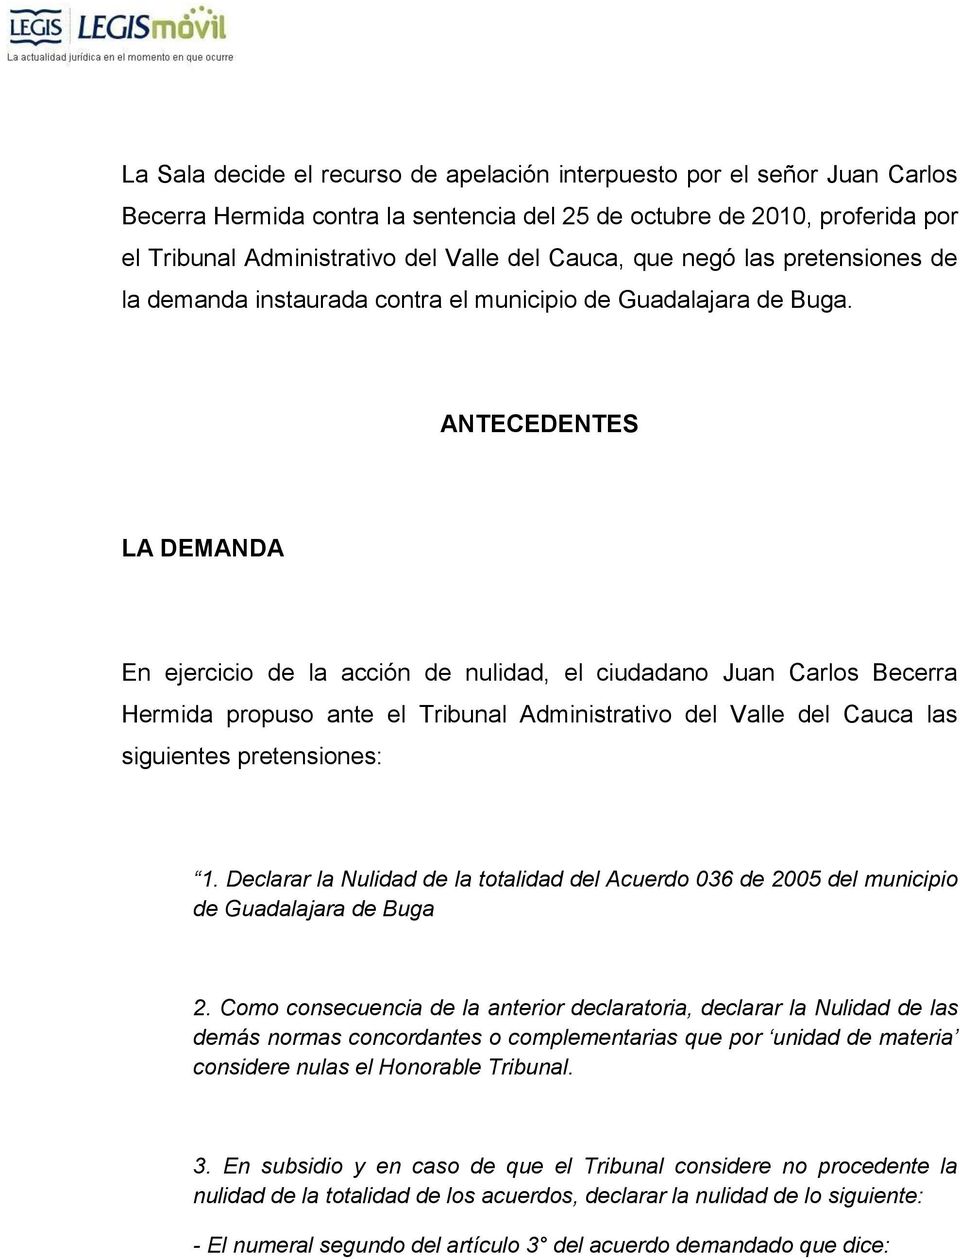 ANTECEDENTES LA DEMANDA En ejercicio de la acción de nulidad, el ciudadano Juan Carlos Becerra Hermida propuso ante el Tribunal Administrativo del Valle del Cauca las siguientes pretensiones: 1.